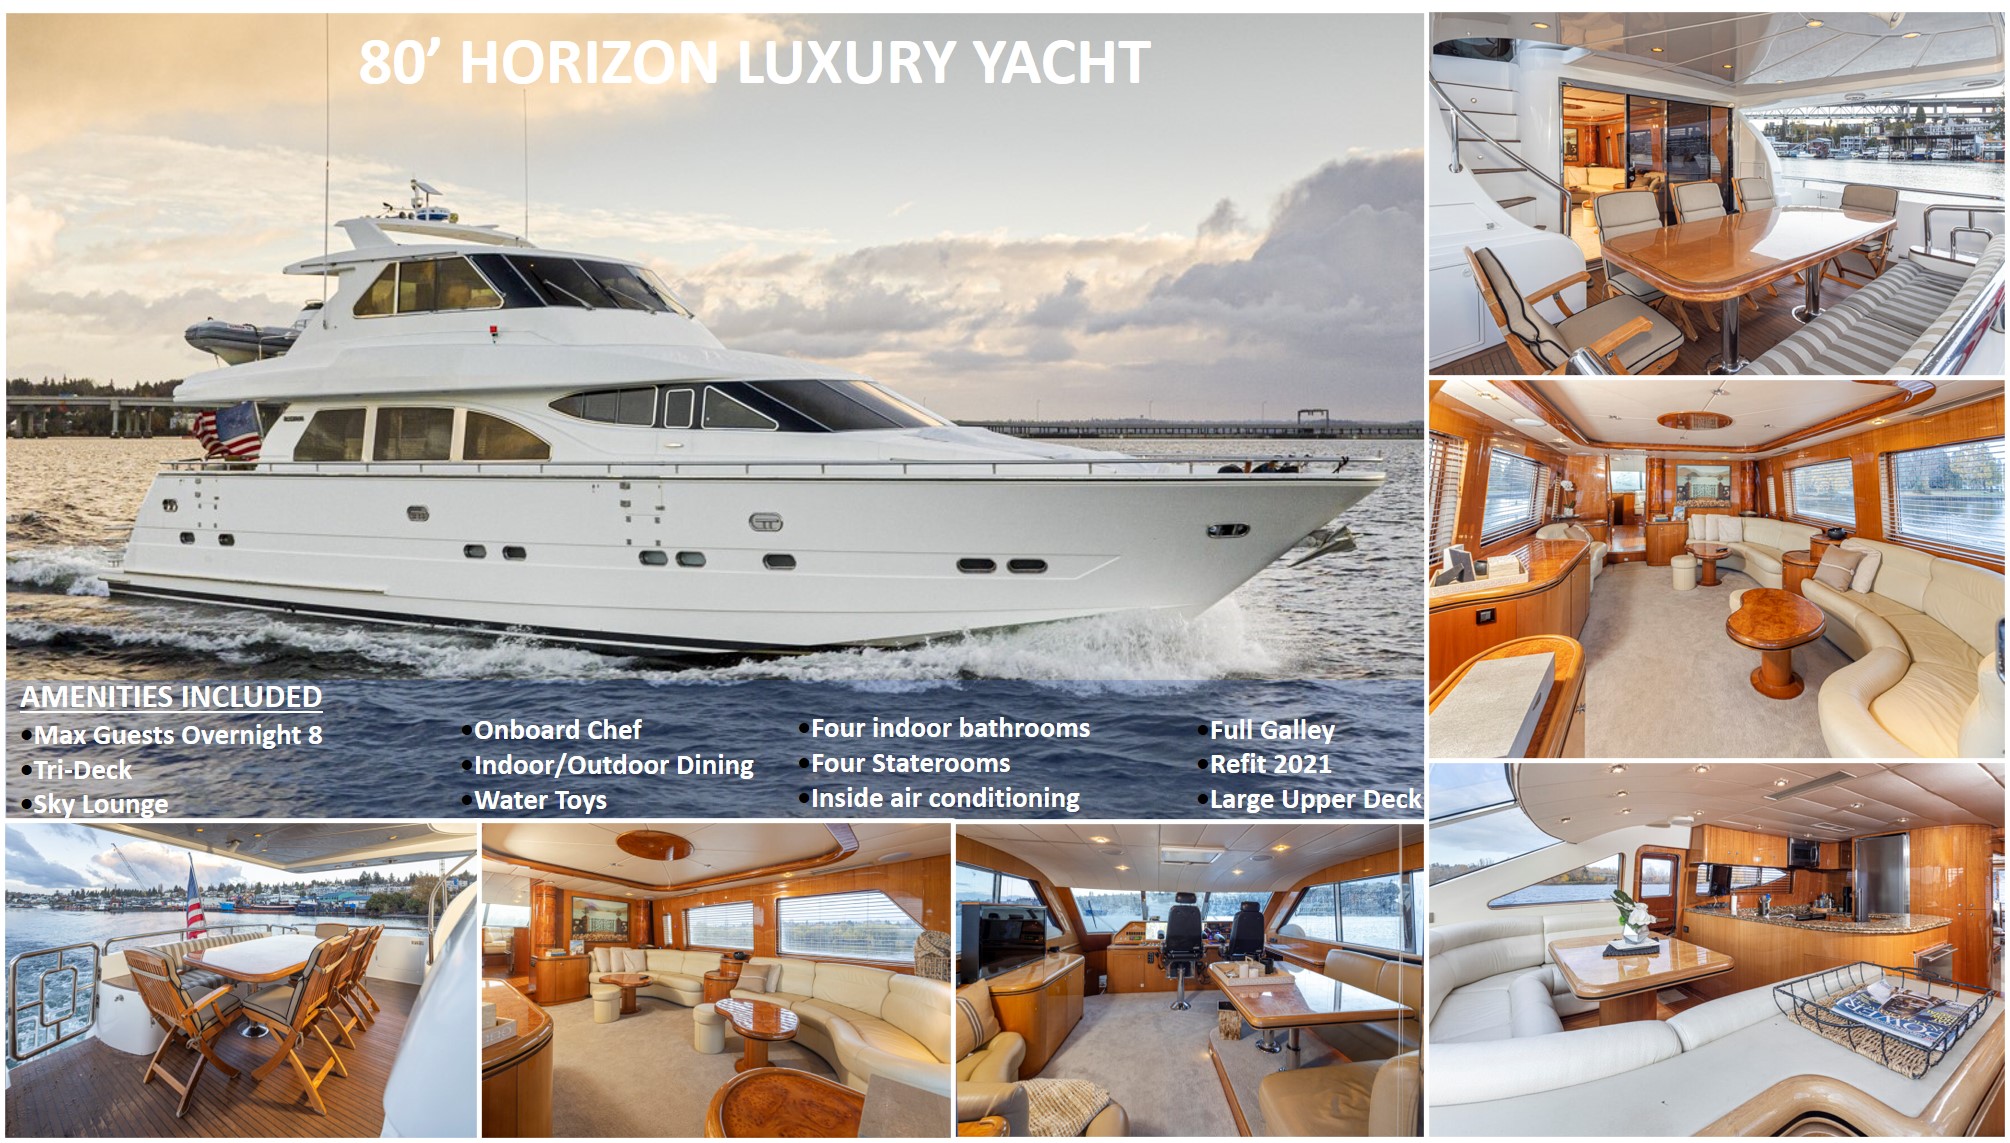 80-Horizon-Luxury-Yacht